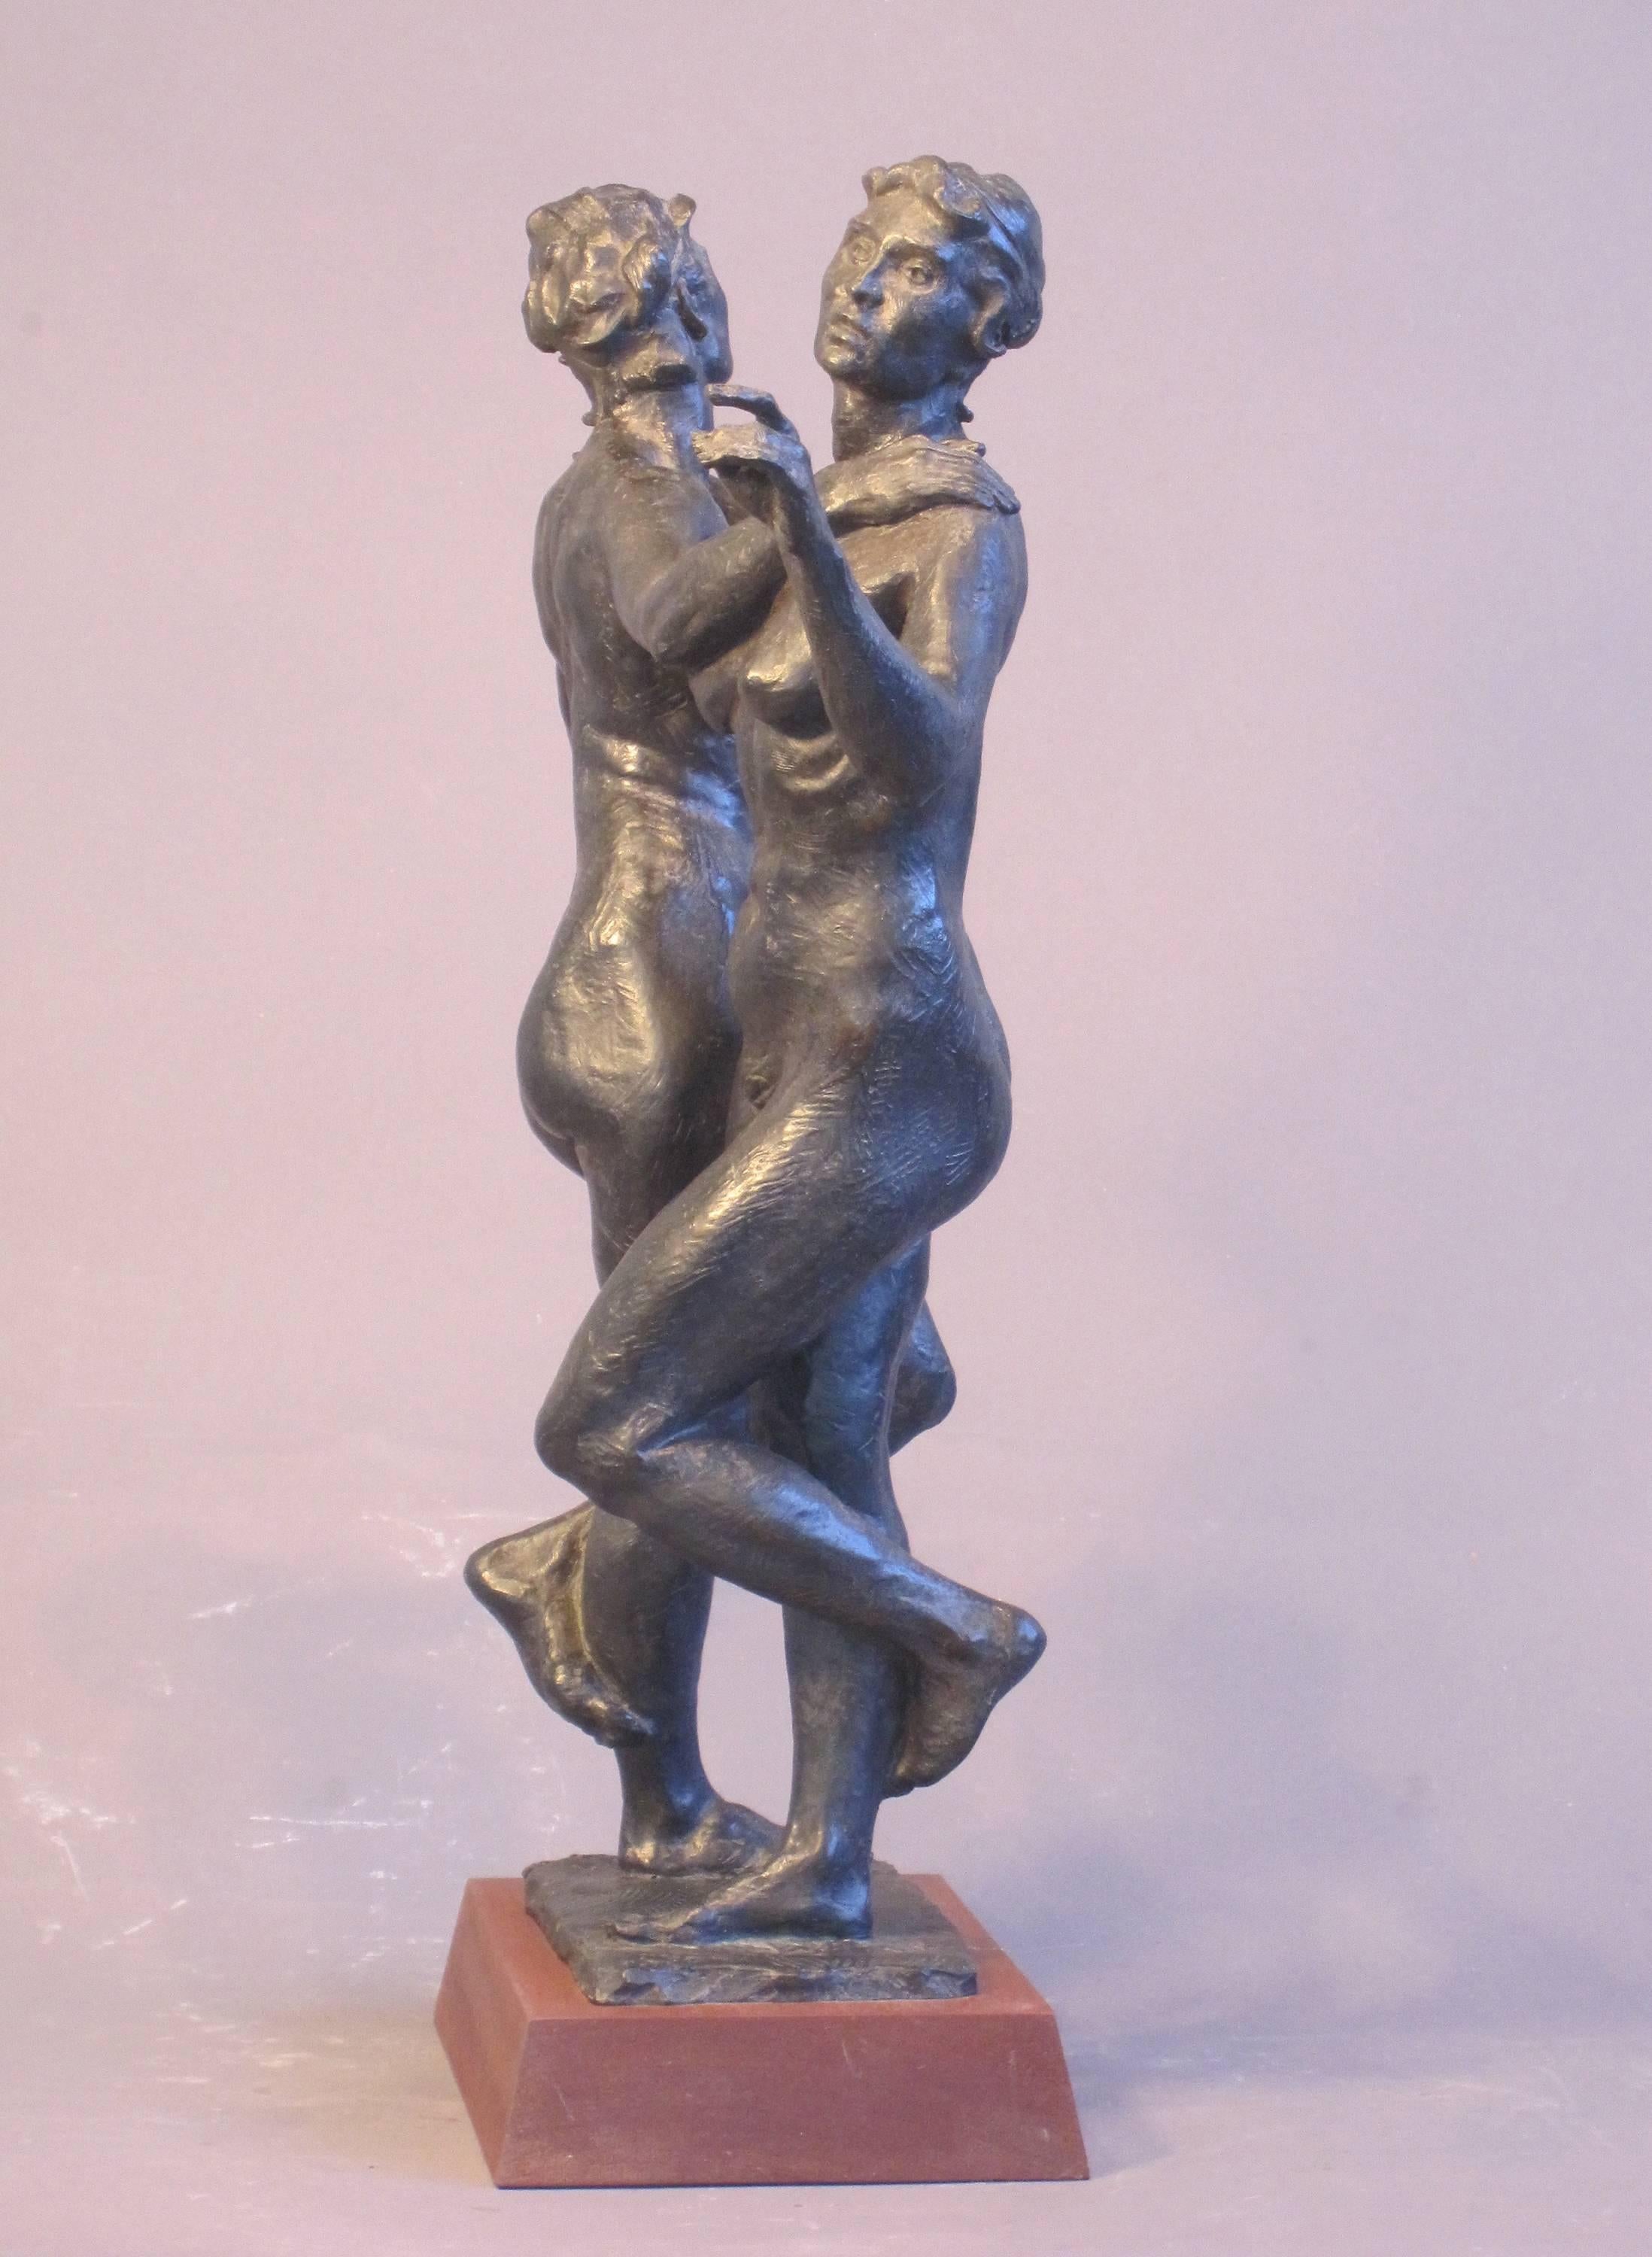 raymond sculpture